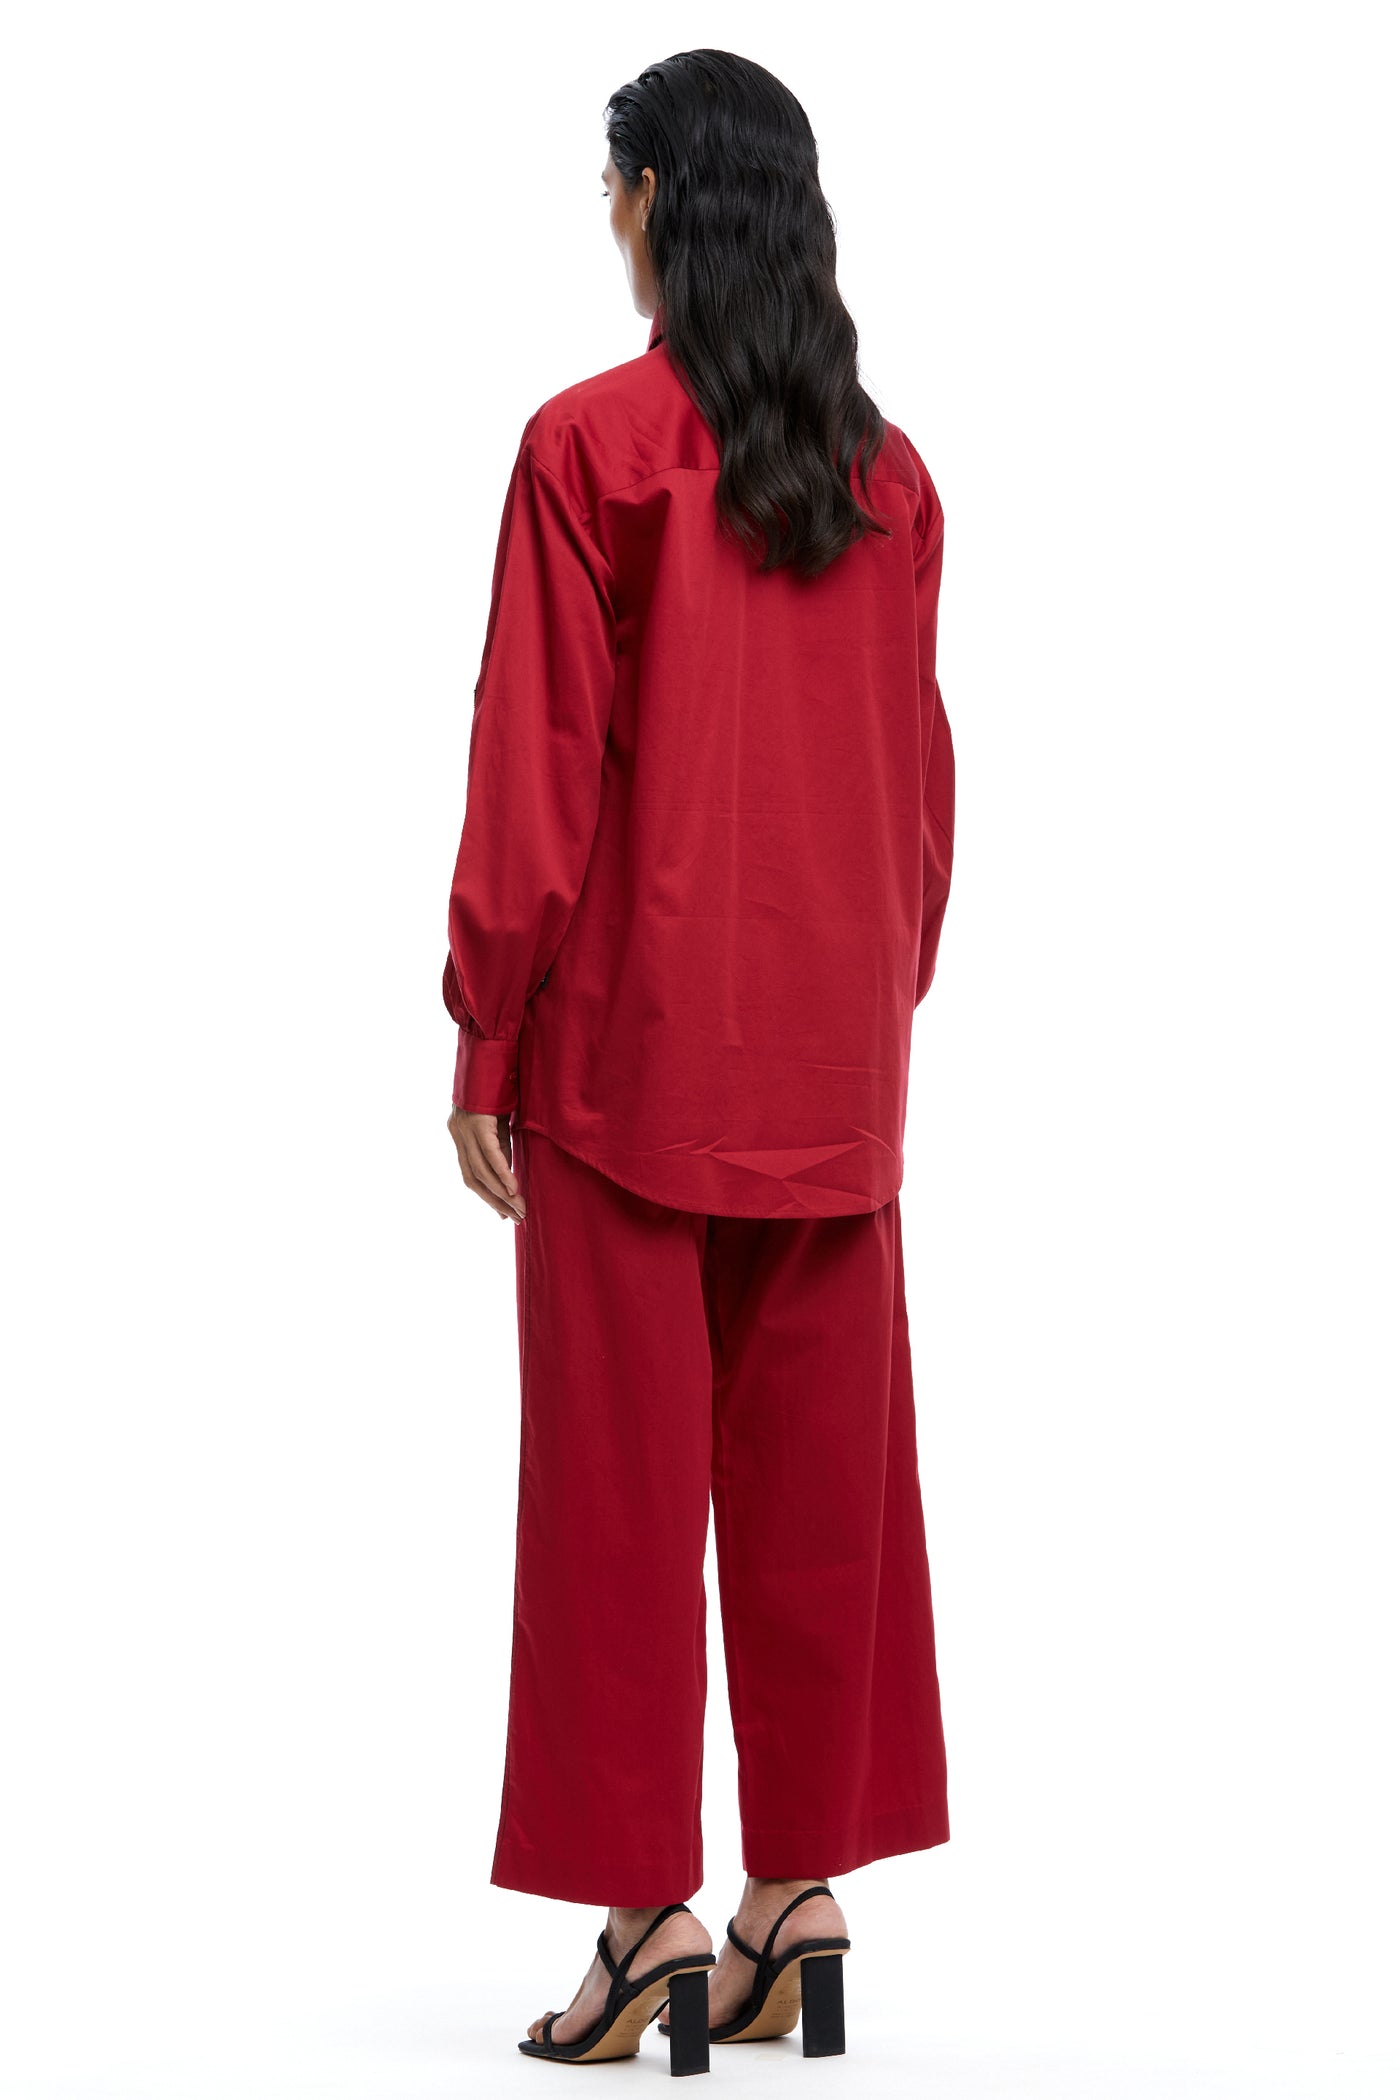 Kanika Goyal Label Solid Ankle Length Pants Red indian designer wear online shopping melange singapore